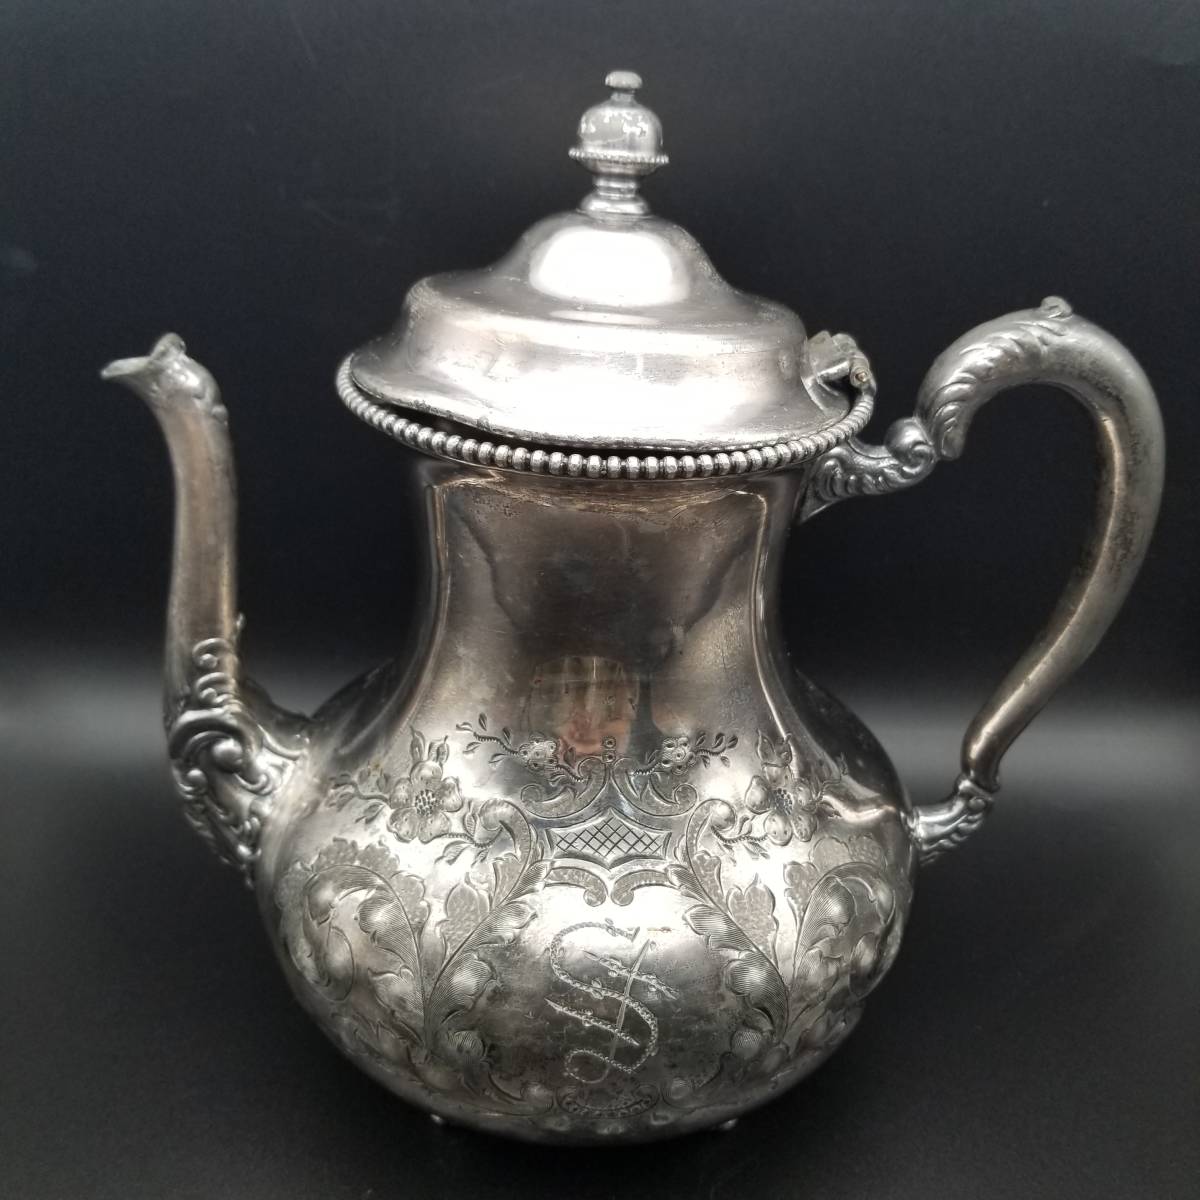 20世紀初頭 米国 アンティーク Saint Louis Silver Co.シルバーメッキ ティーポット 銀メッキ 彫金 ヴィクトリアスタイル 紅茶 装飾